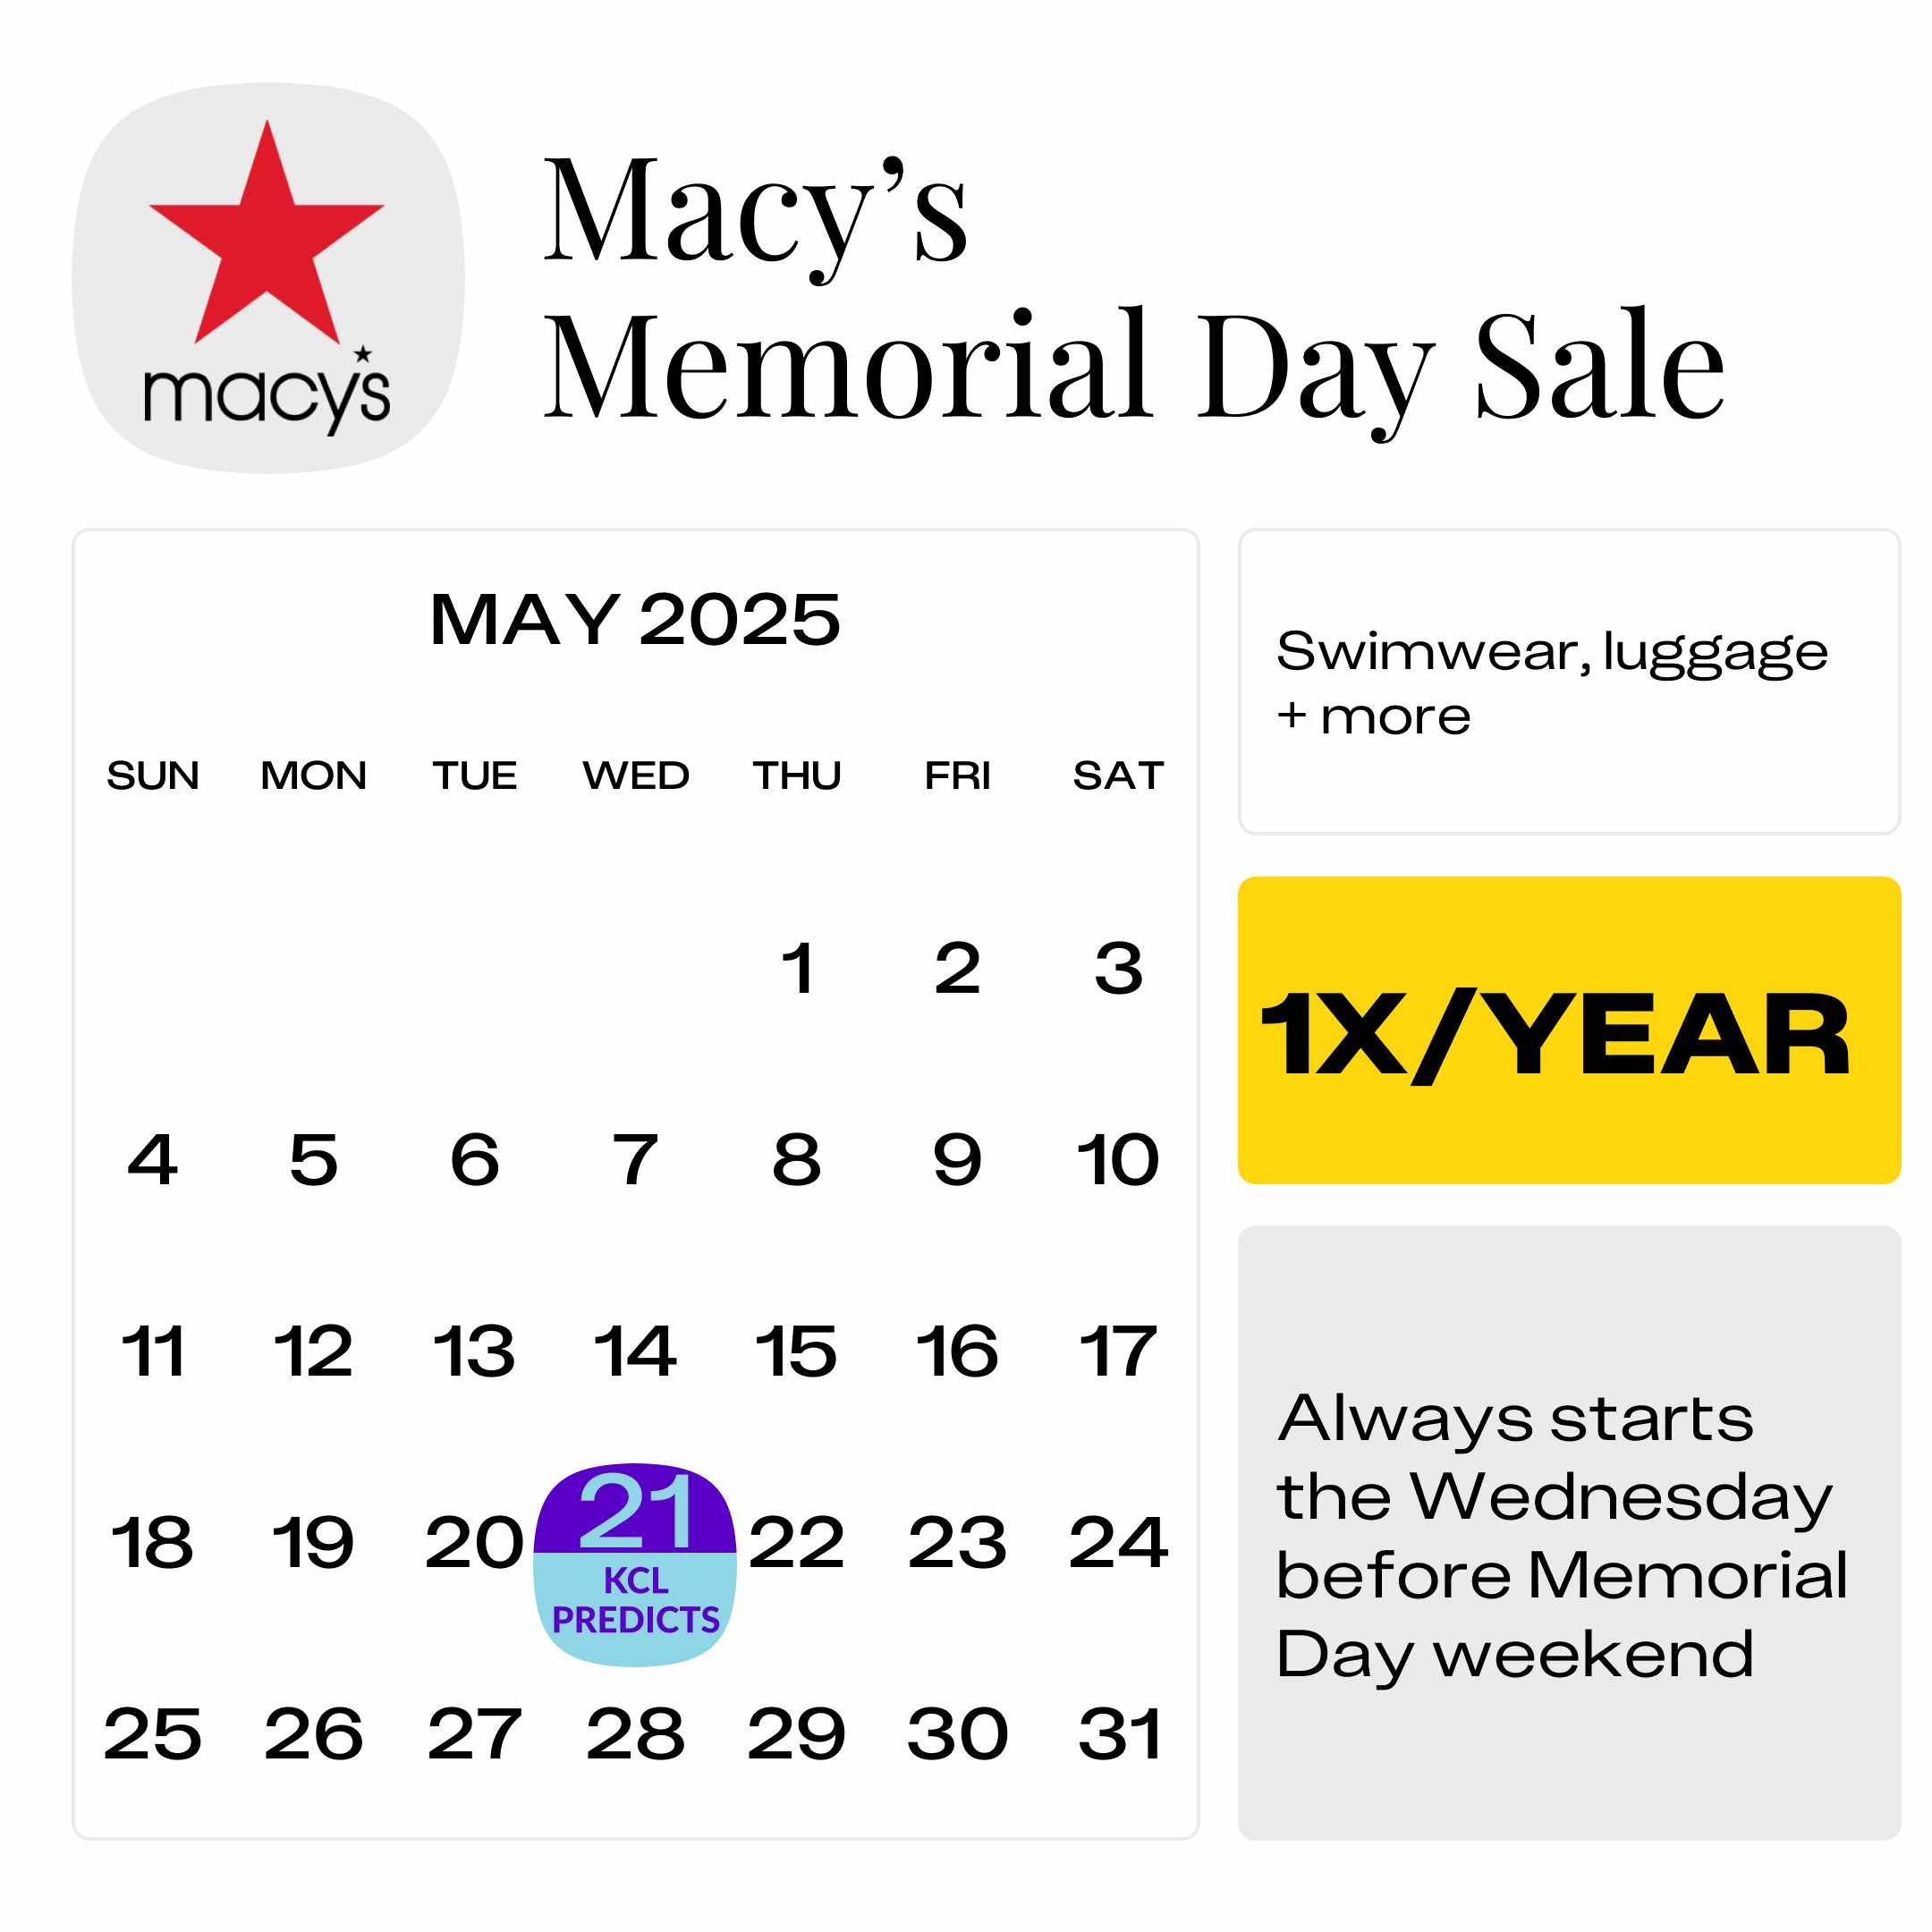 Macys-Memorial-Day-Sale-2025-predicted